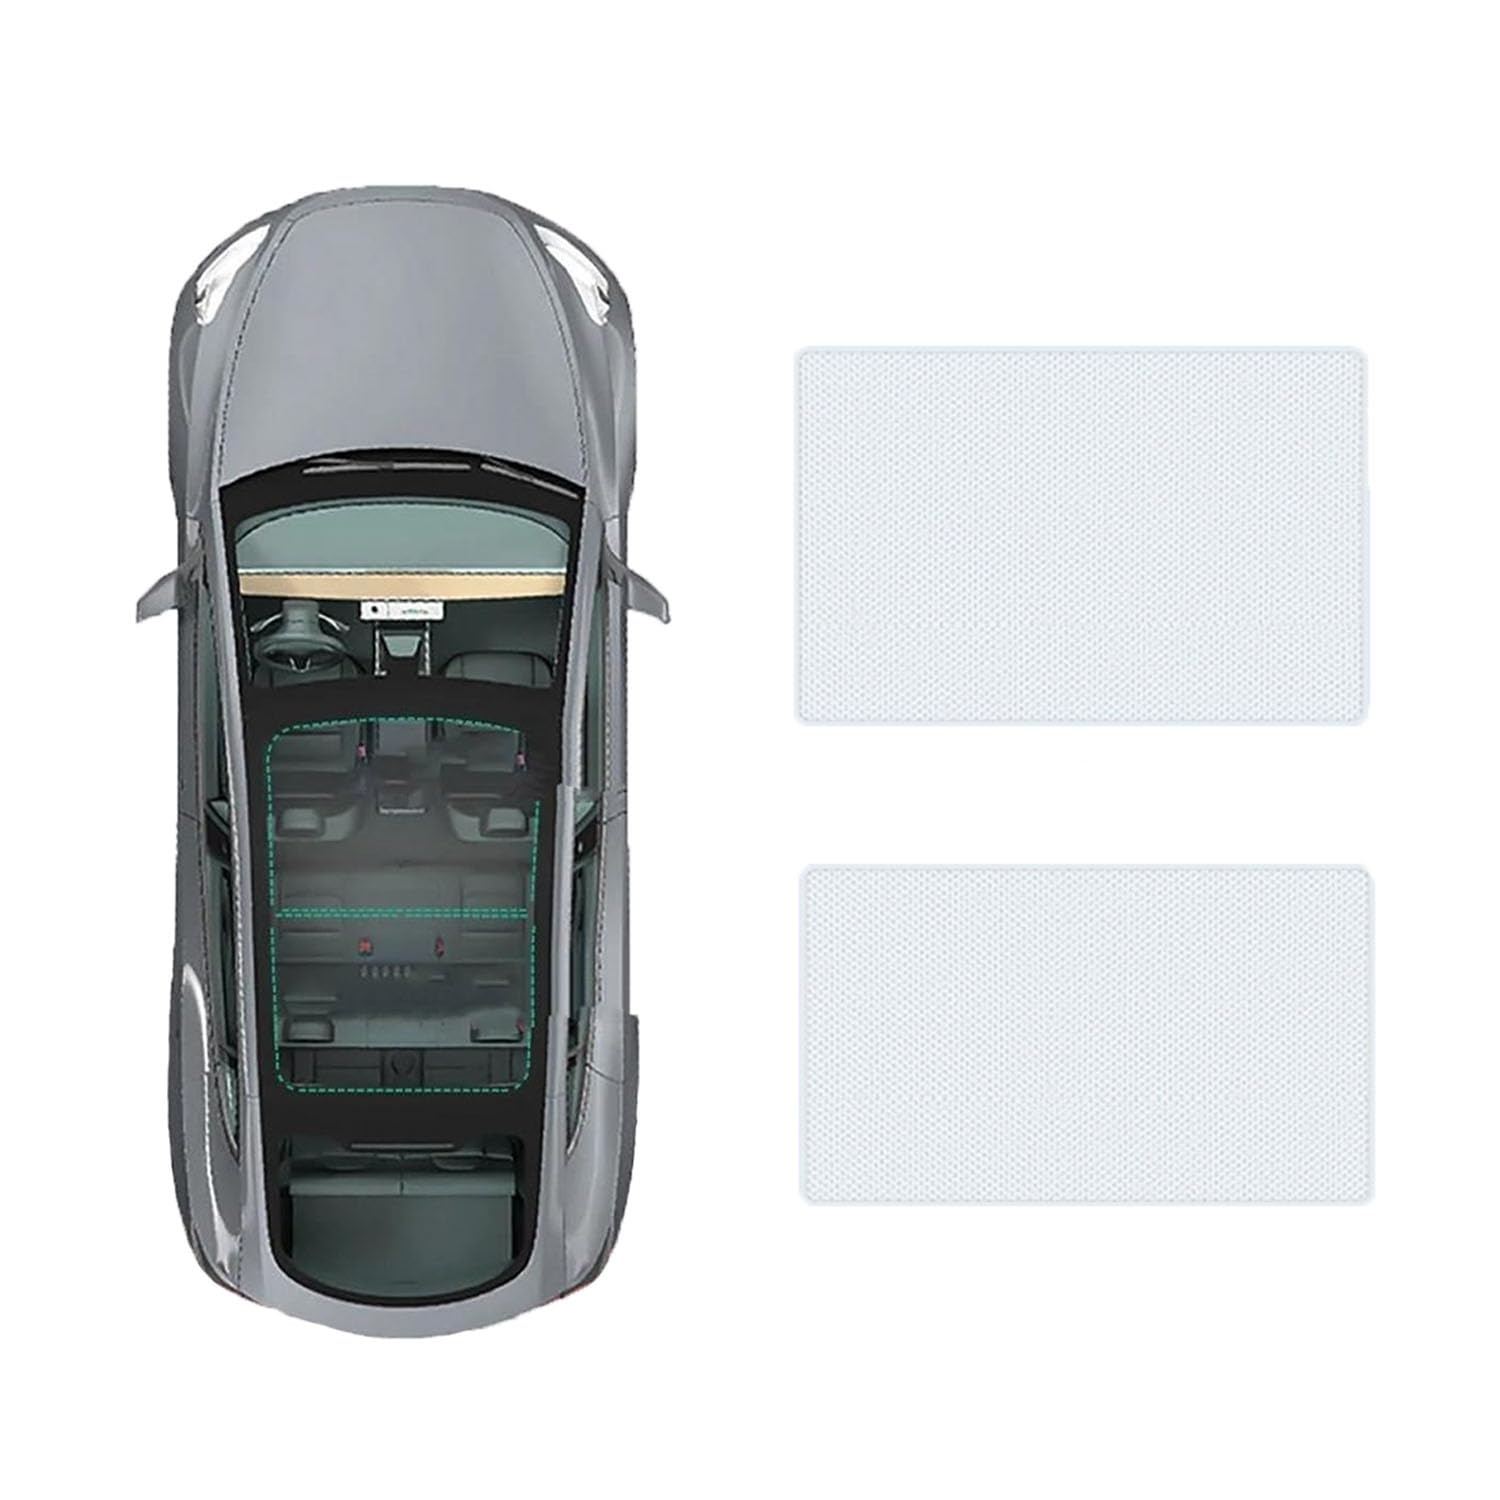 Auto-Schiebedach-Beschattung Für Mercedes Benz A-Class 2019-,Auto Schiebedach Sonnenschutz Dachfenster Dach Wärme Isolierung Beschattung Innen,A-Gray white regular Style von LiuROSE